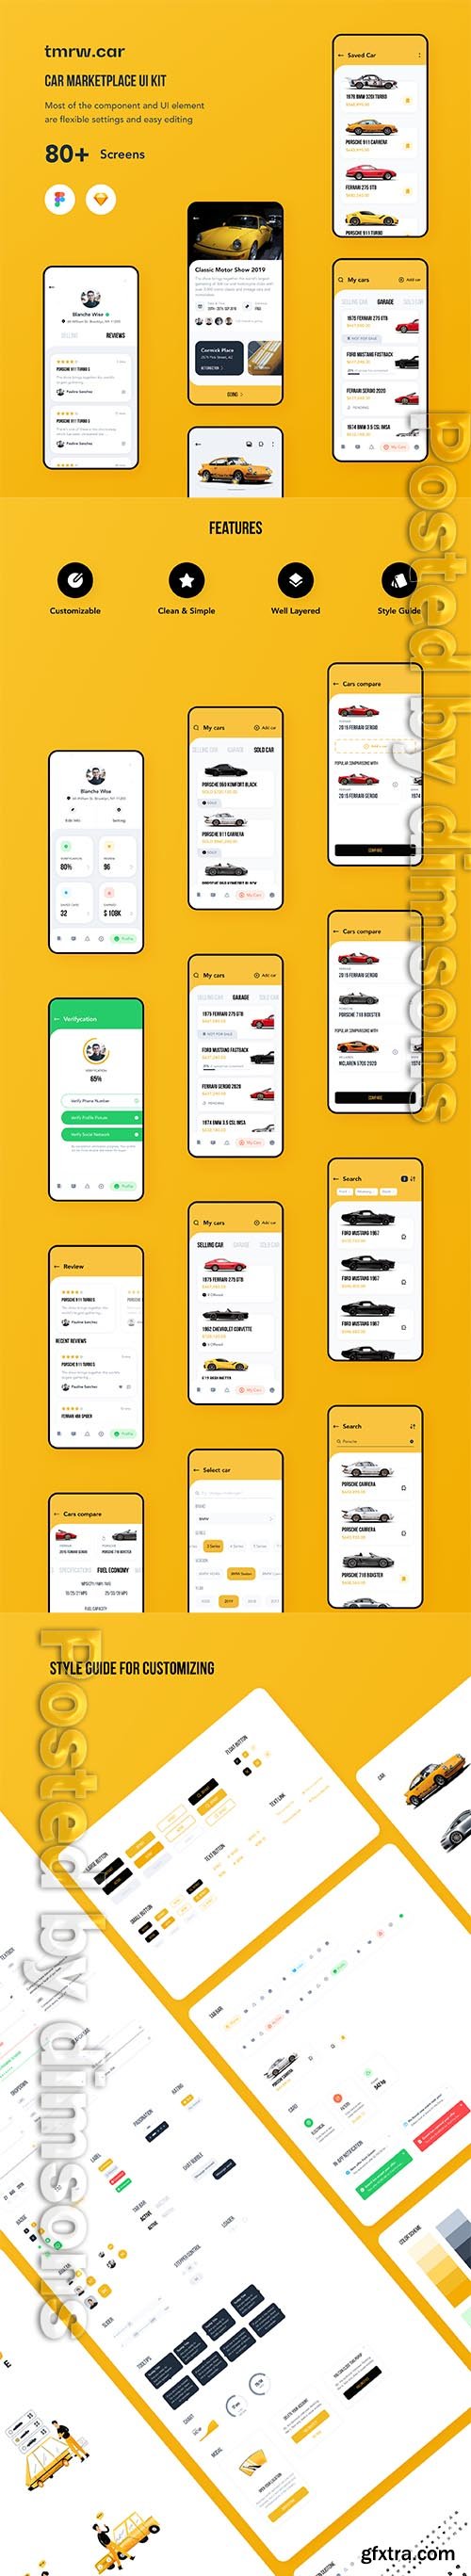 tmrw.car - Car Marketplace UI Kit